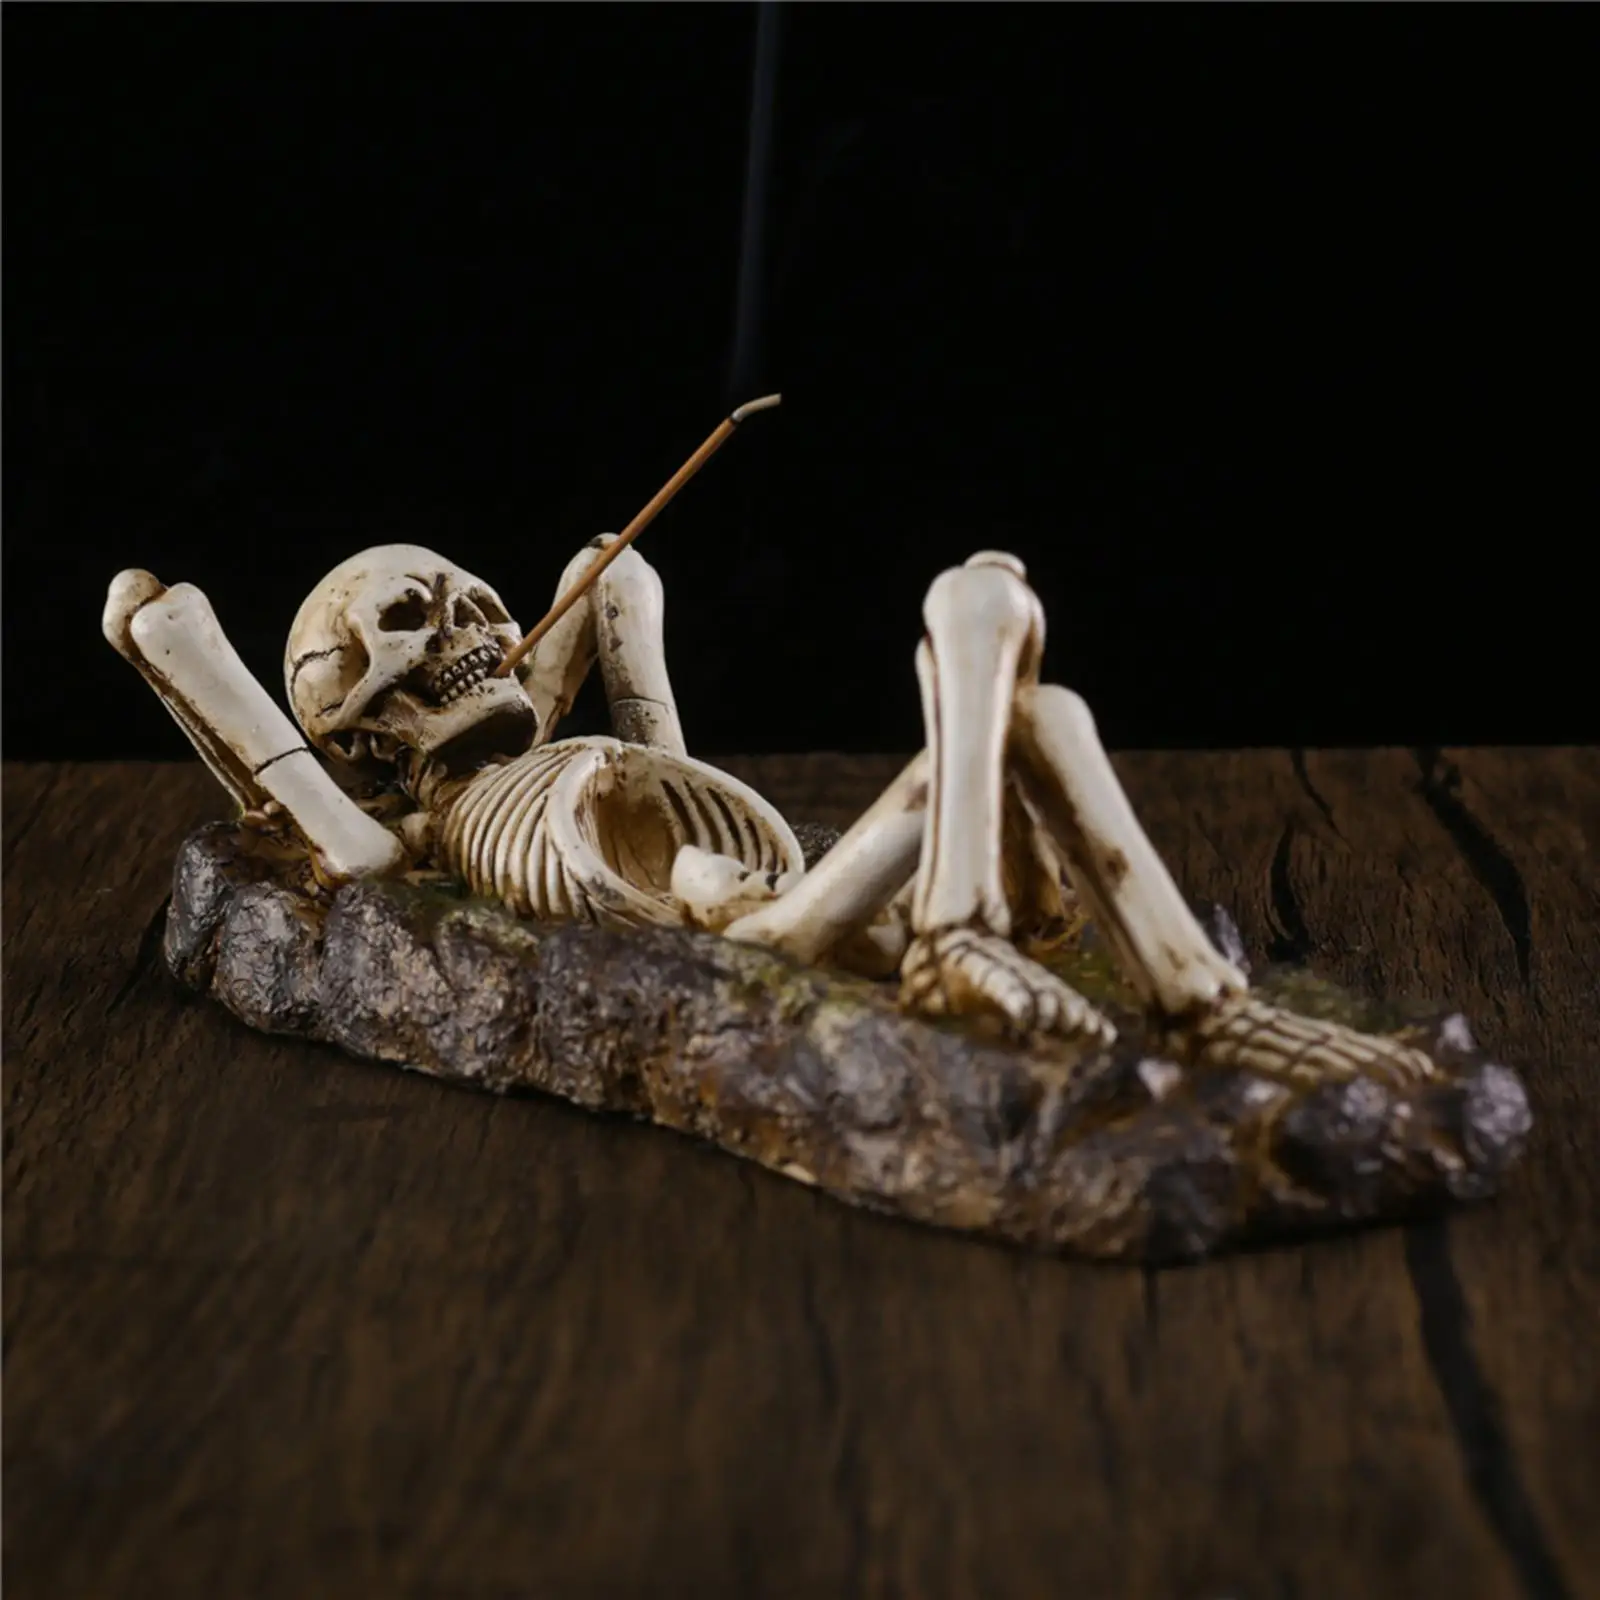 Incense Burner Skull Figurine Sculpture Incense Stick Holder Decor Gifts